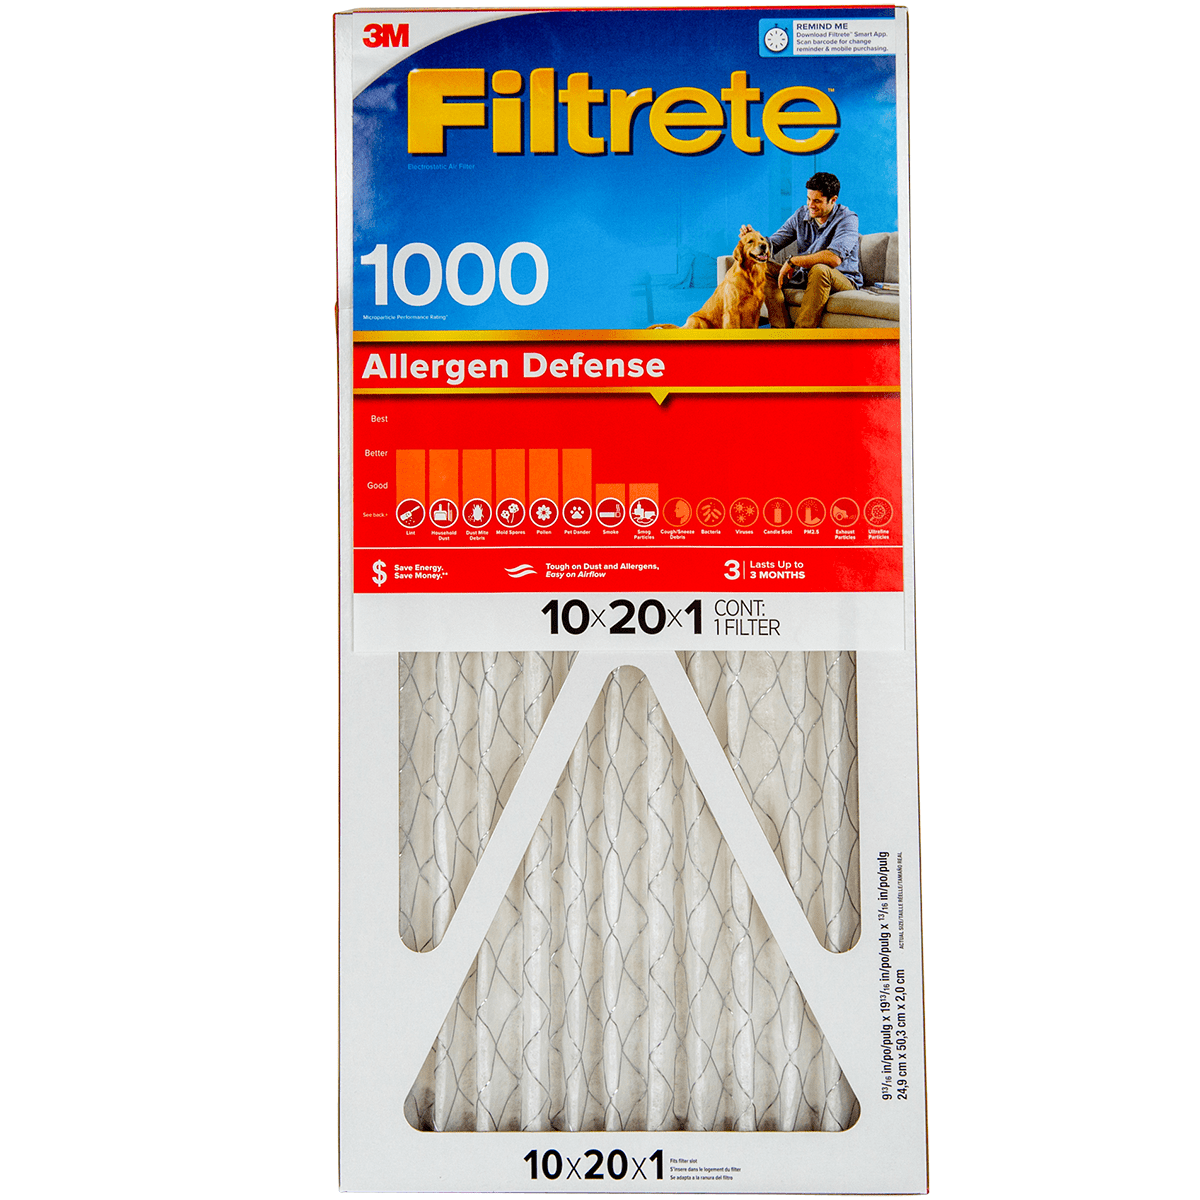 3M Filtrete Allergen Defense Furnace Filter 10x20x1